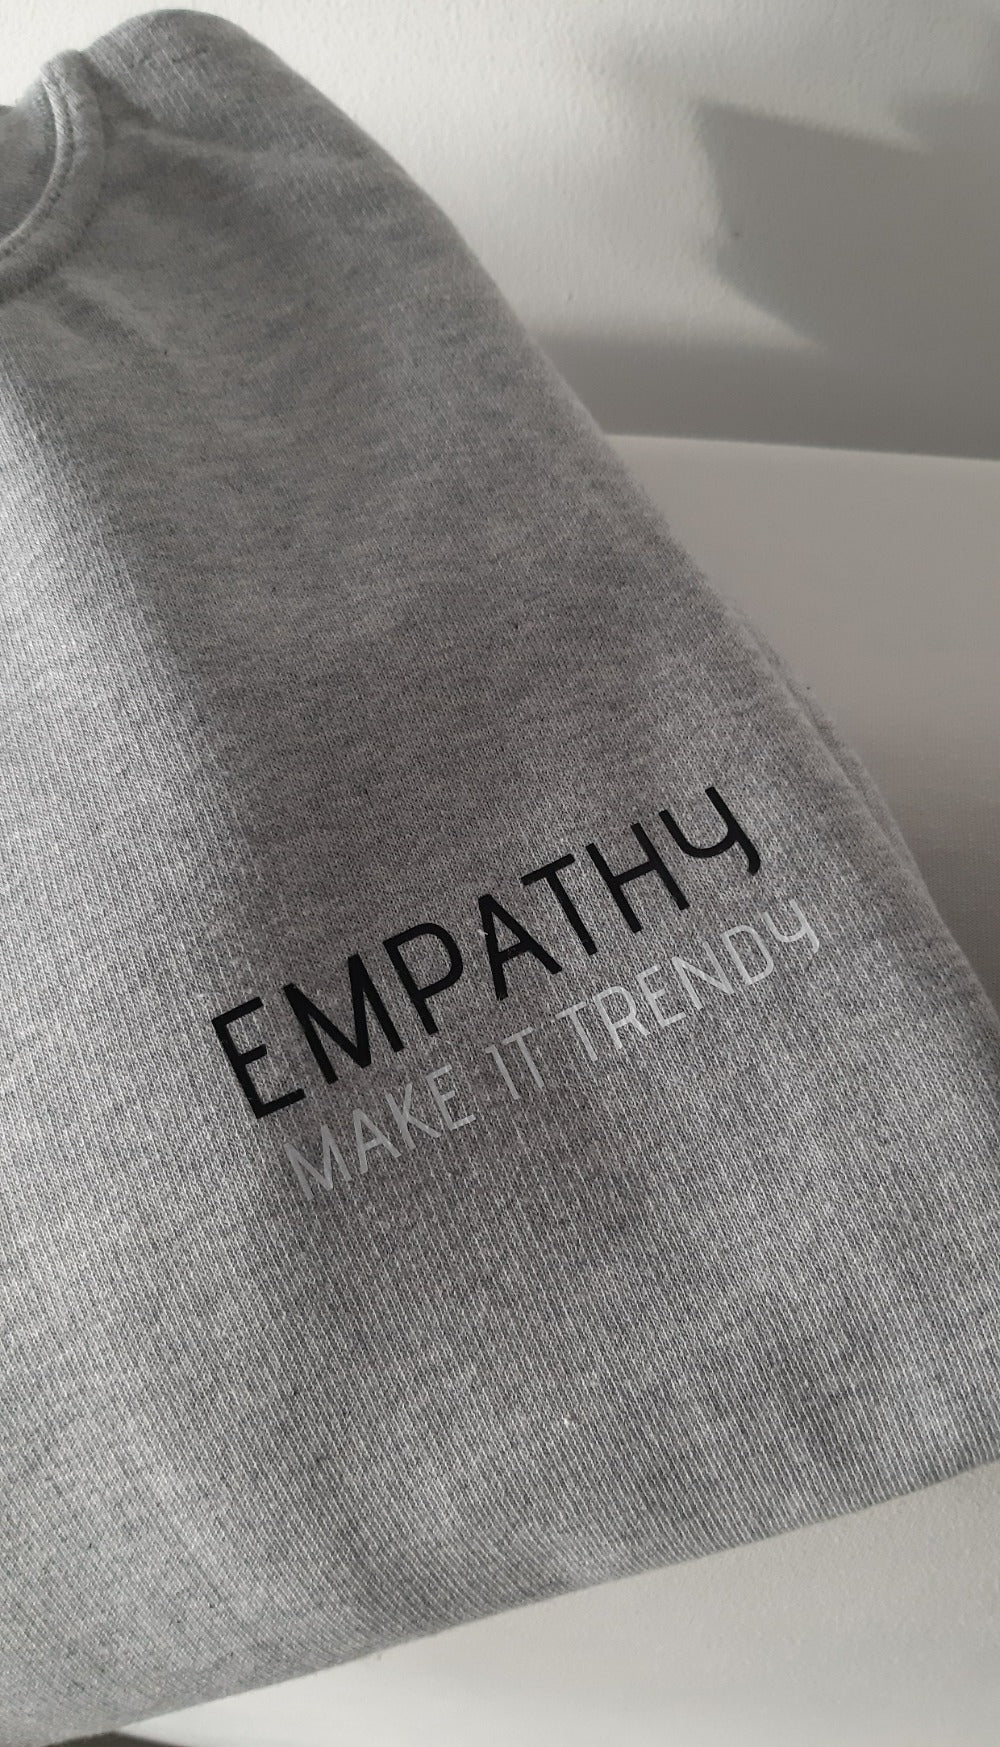 Sweatshirt - Empathy, Make it trendy